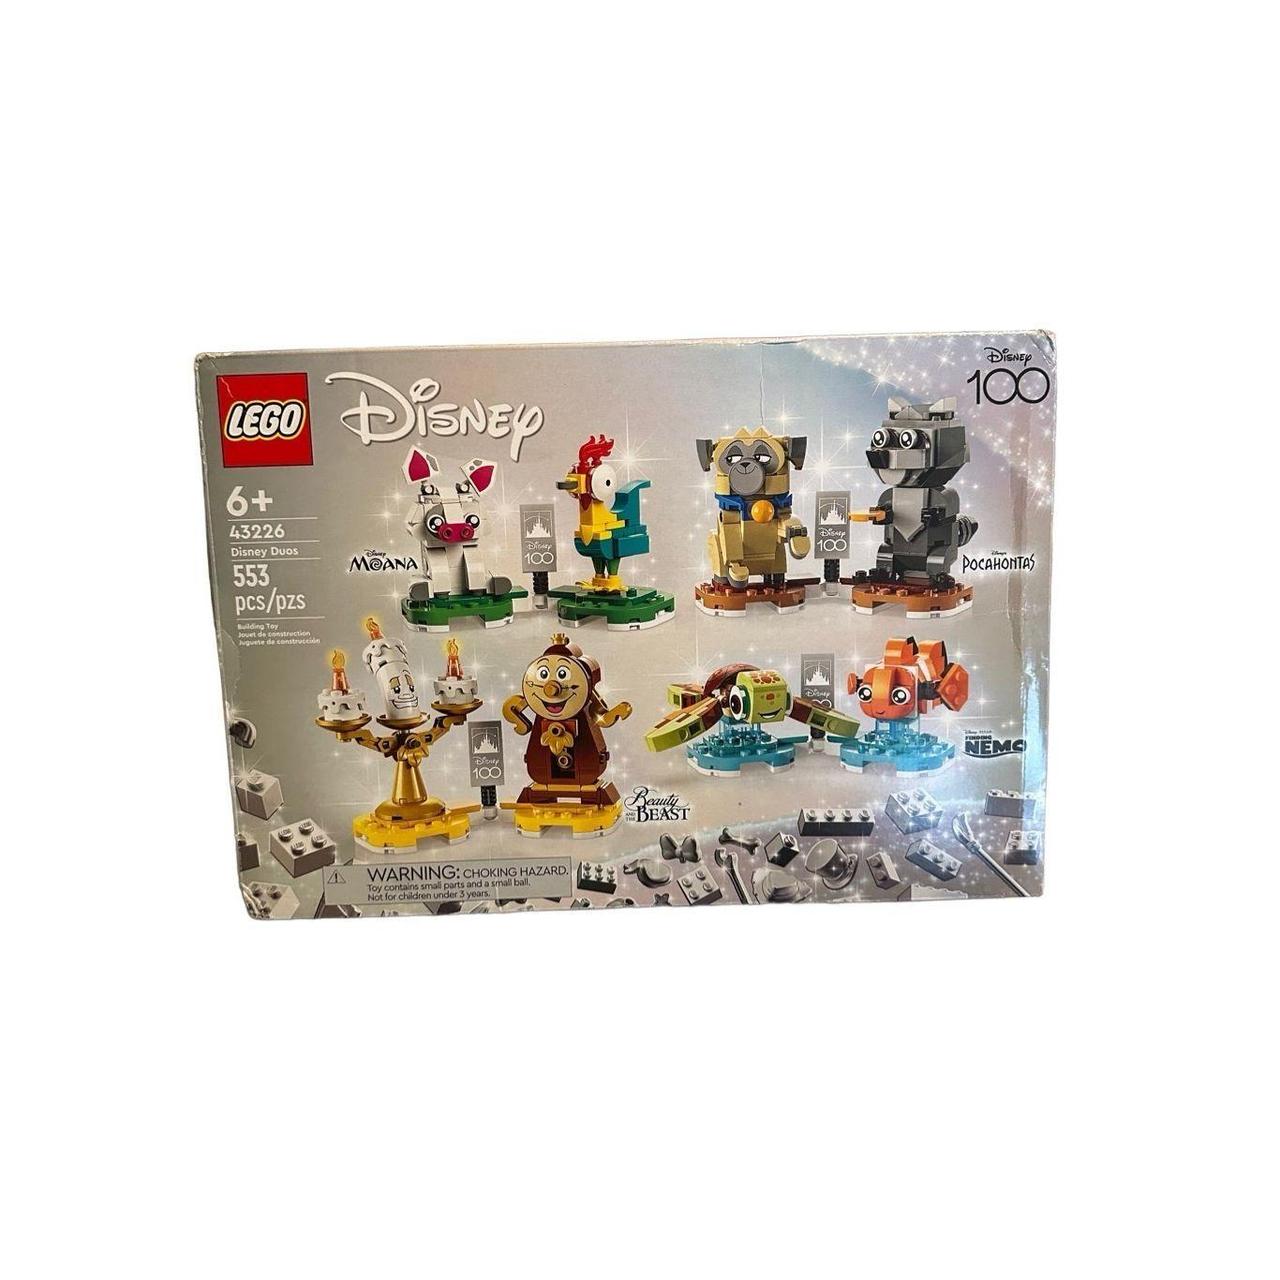 LEGO DISNEY: DISNEY DUOS FIGURES (DISNEY 100) 43226 - Depop